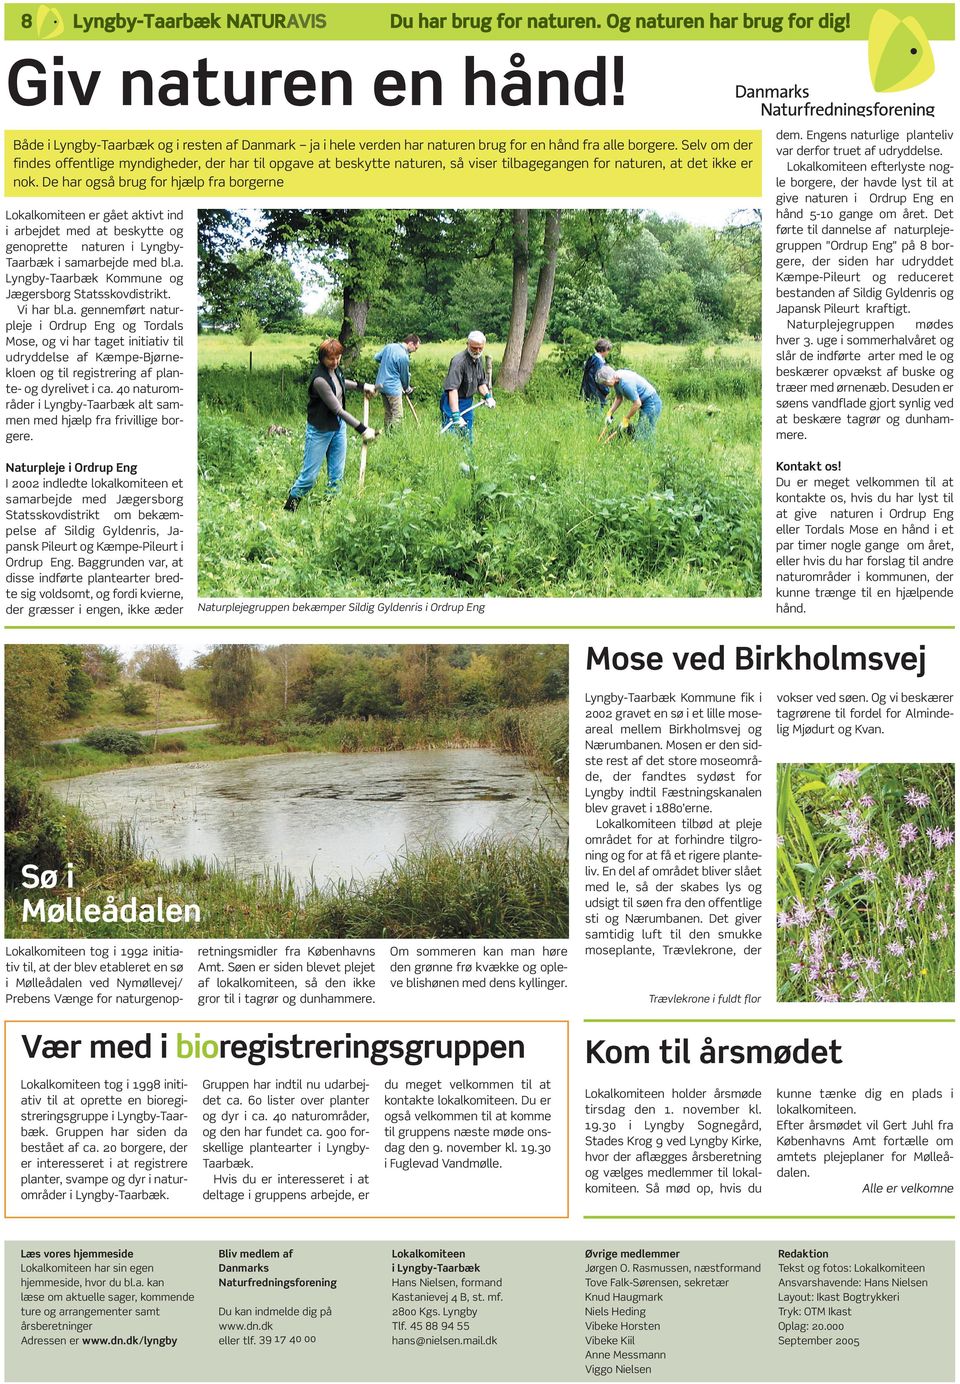 40 naturområder i Lyngby-Taarbæk alt sammen med hjælp fra frivillige borgere. dem. Engens naturlige planteliv var derfor truet af udryddelse.